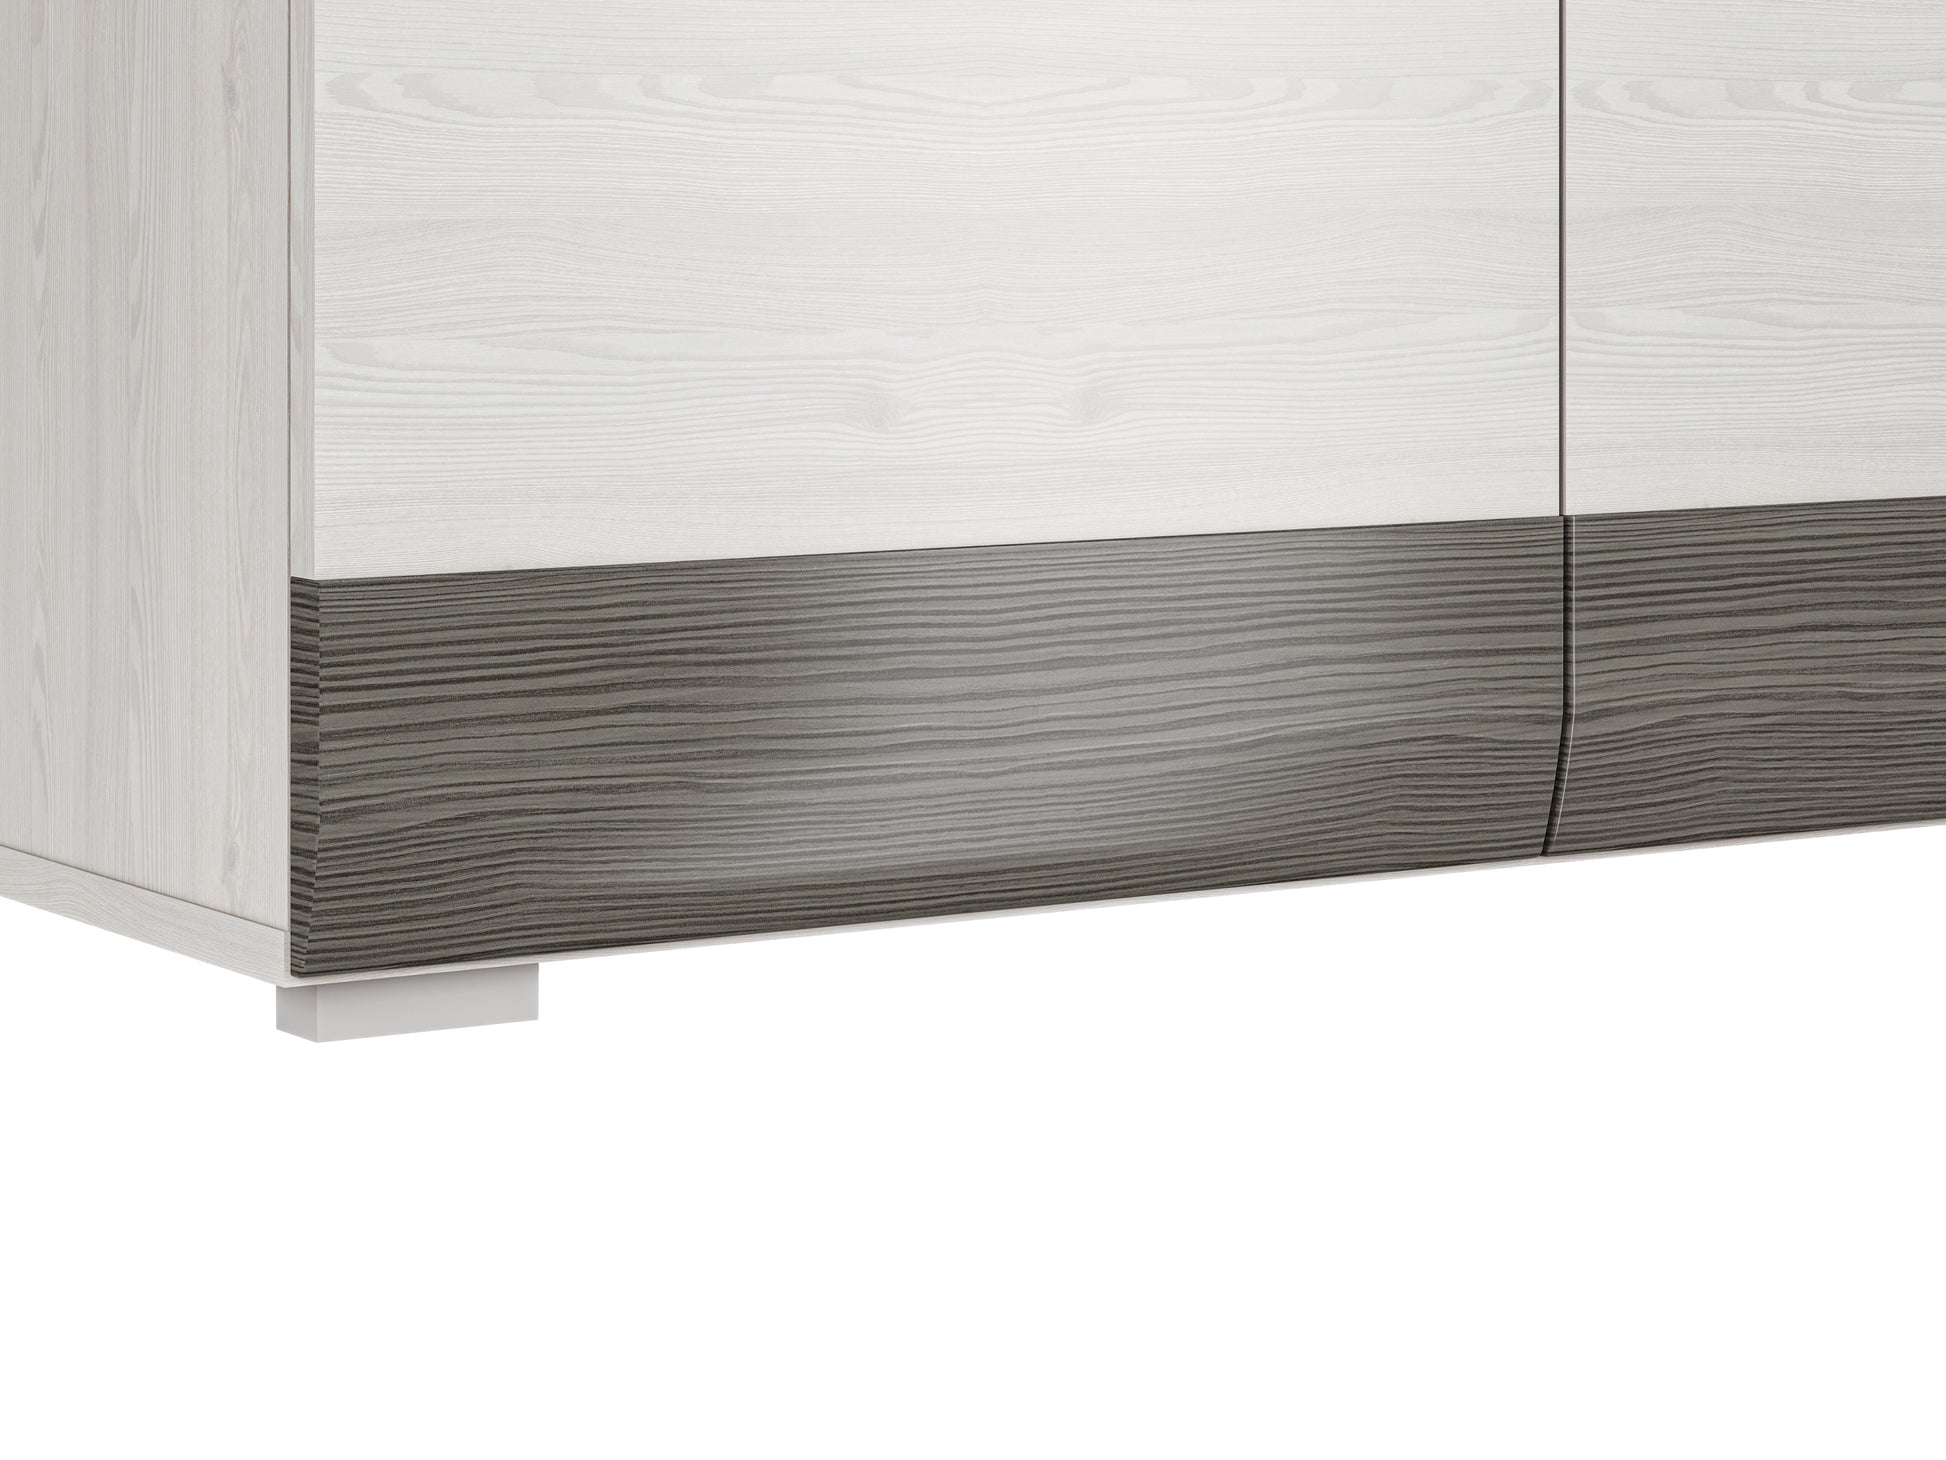 Zdjęcie przedstawiające detale listwy MDF w kolorze New Grey. Listwa jest zaoblona w dół, by podkreślić kształt nowoczesnej szafy na ubrania Blanka.